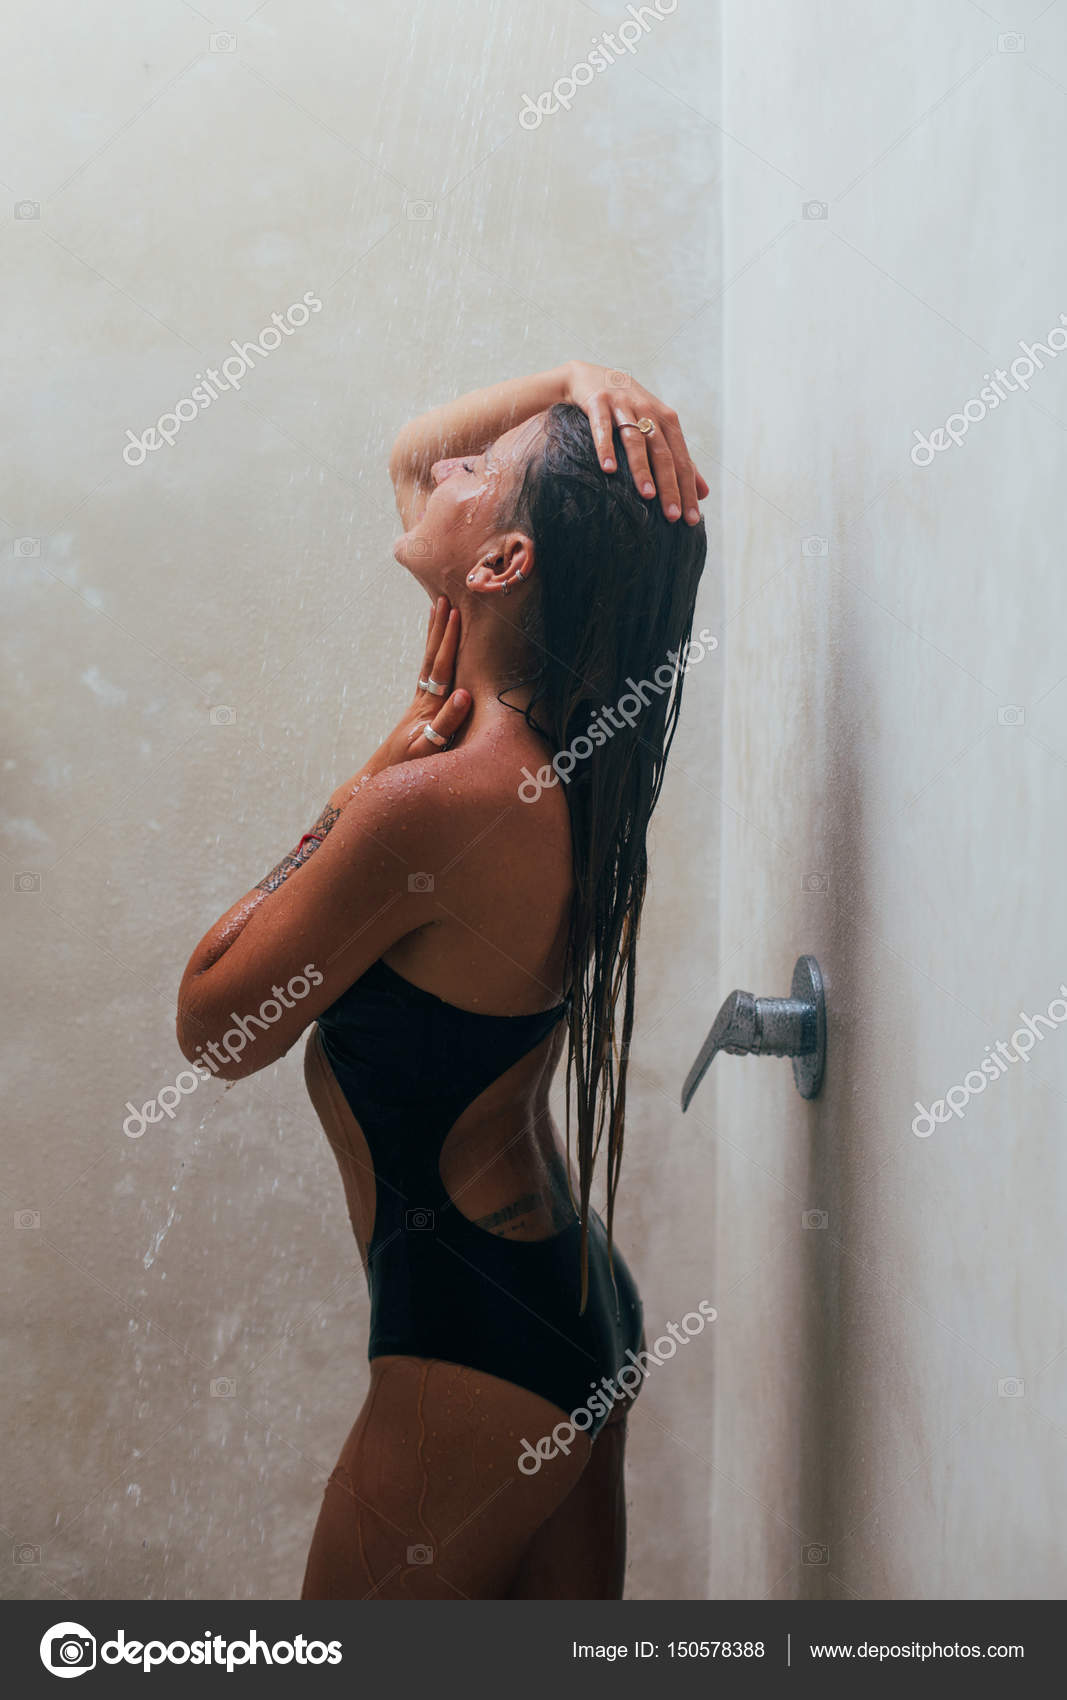 Frauen suchen männer in der dusche